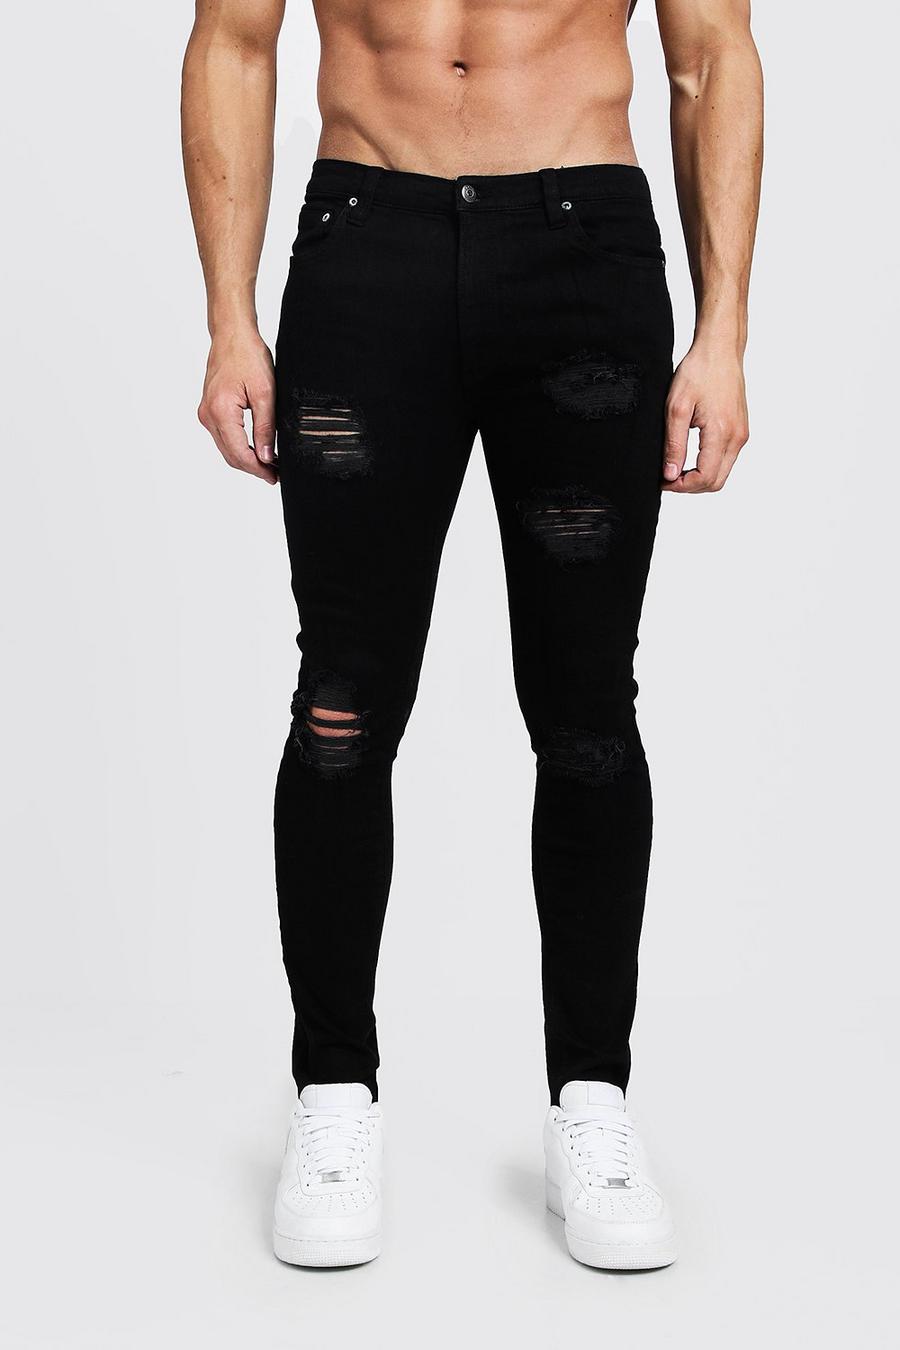 שחור nero סופר סקיני ג'ינס עם הרבה קרעים